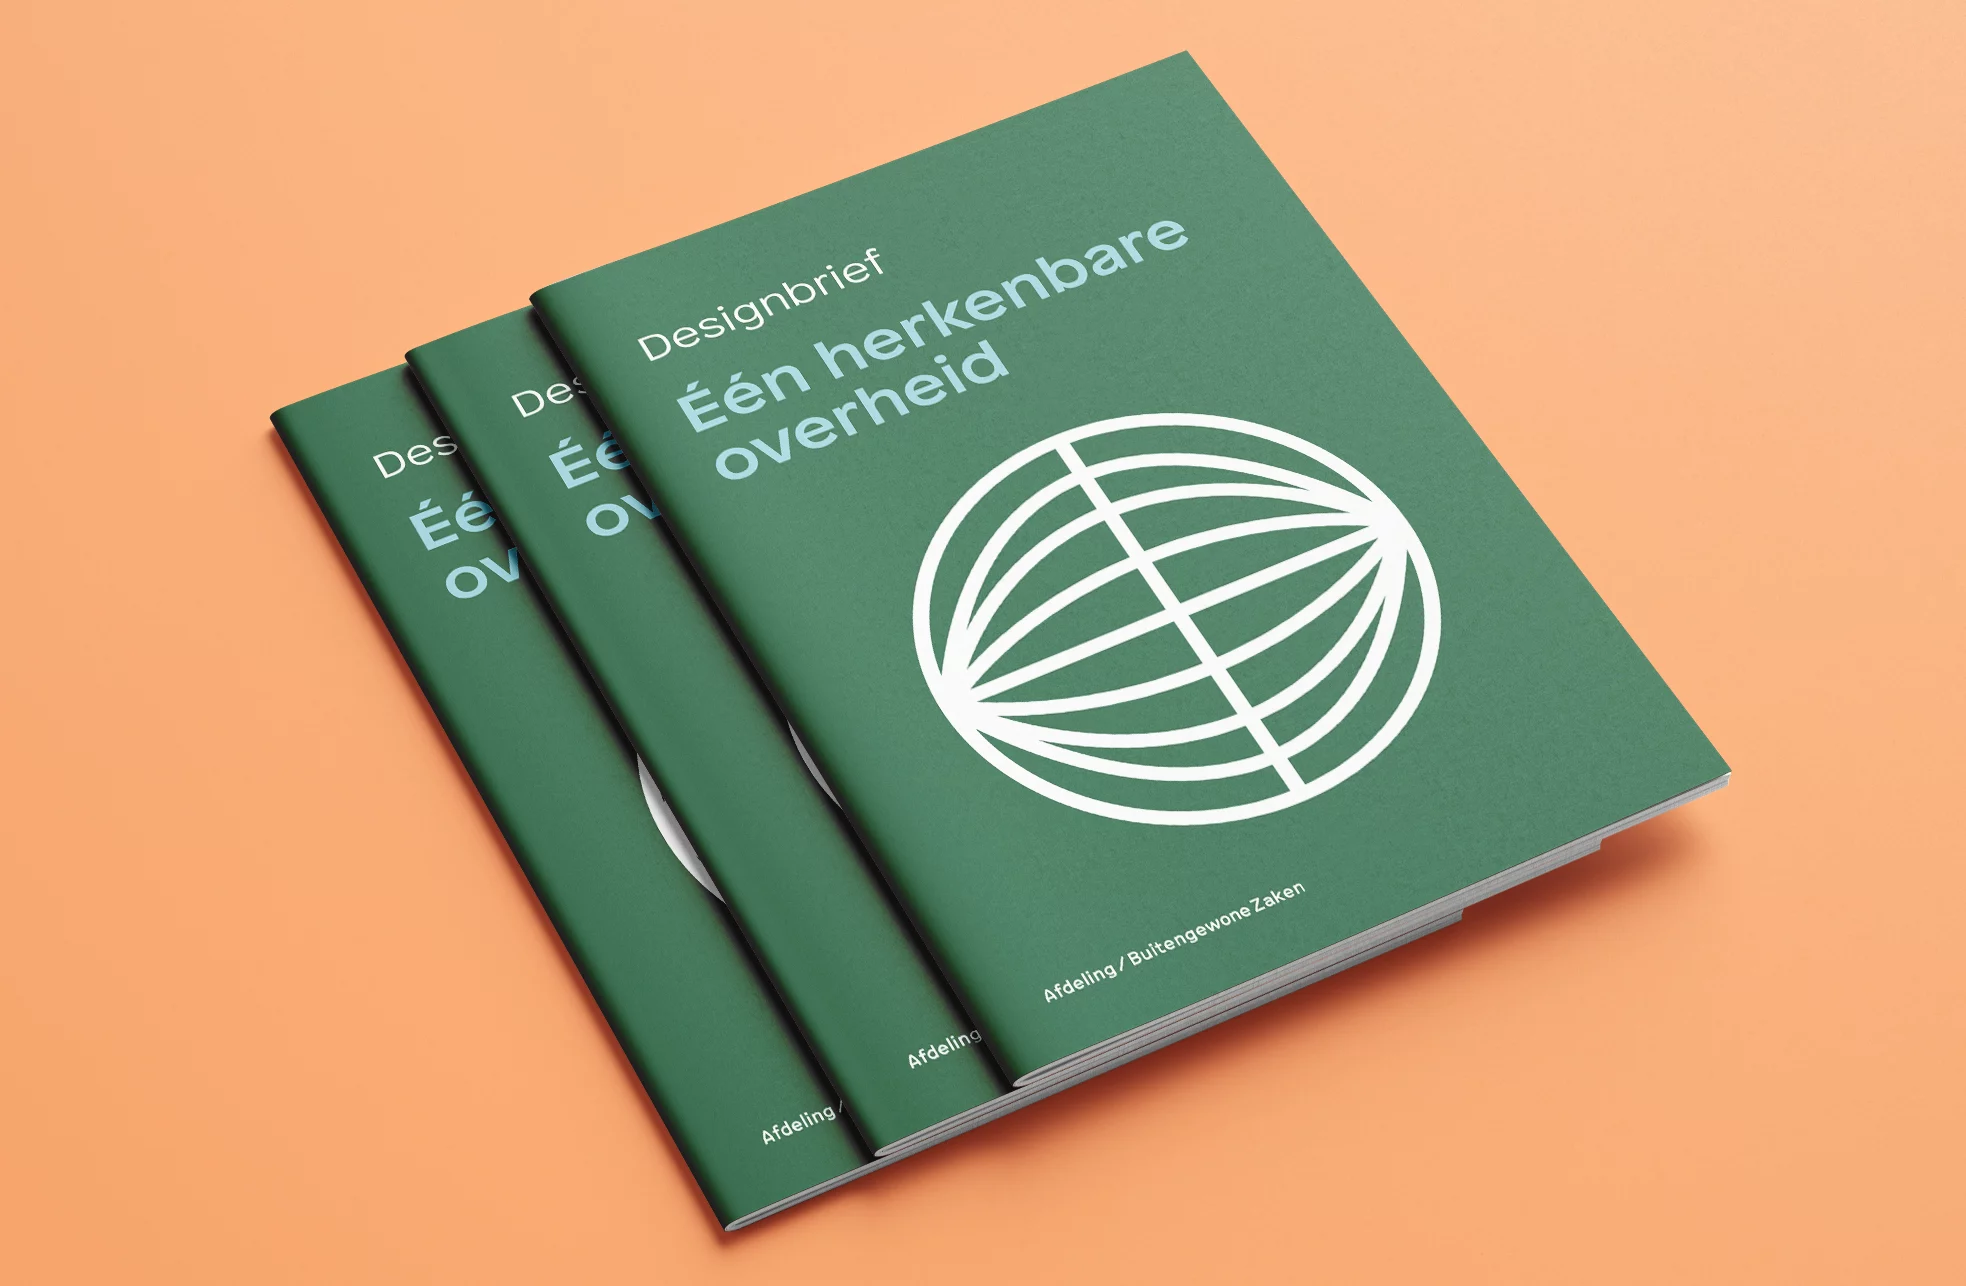 De Designbrief ‘Één herkenbare overheid’ in handzame boekvorm, als vertrekpunt na het ontwerpend onderzoek.